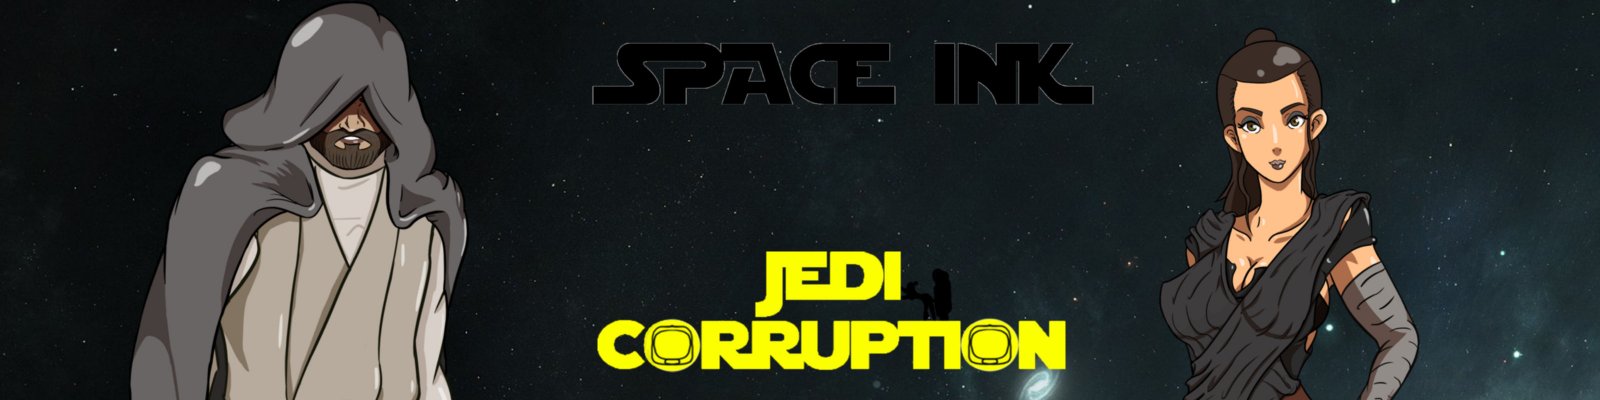 SpaceInk - Jedi Corruption Version 0.1